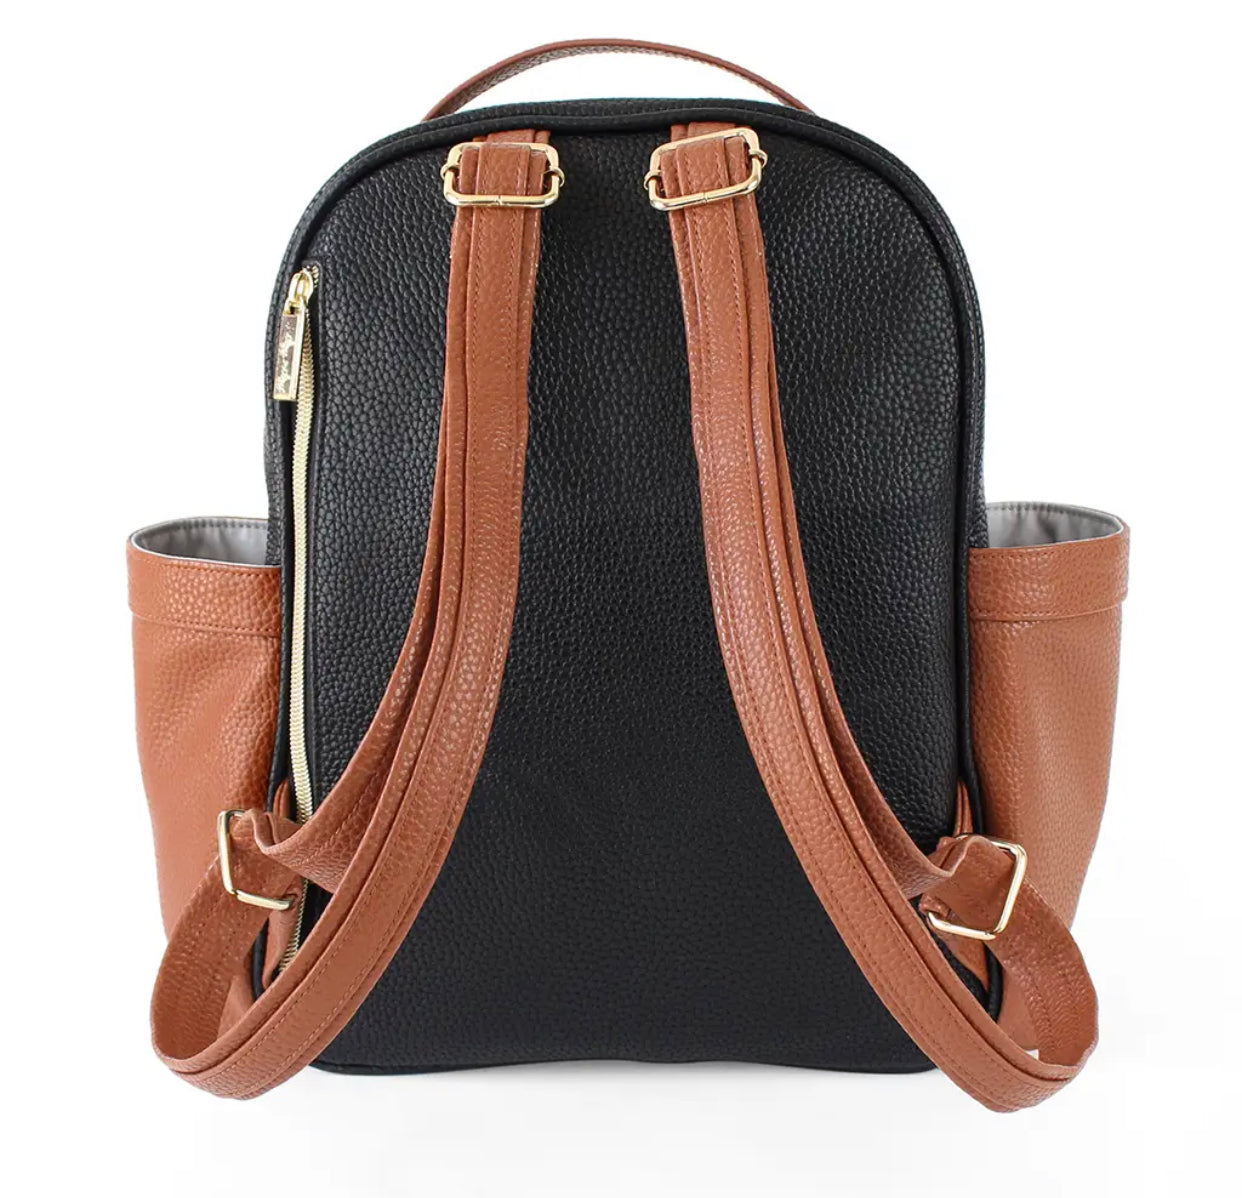 Itzy Mini™ Diaper Bag Backpack - Coffee & Cream